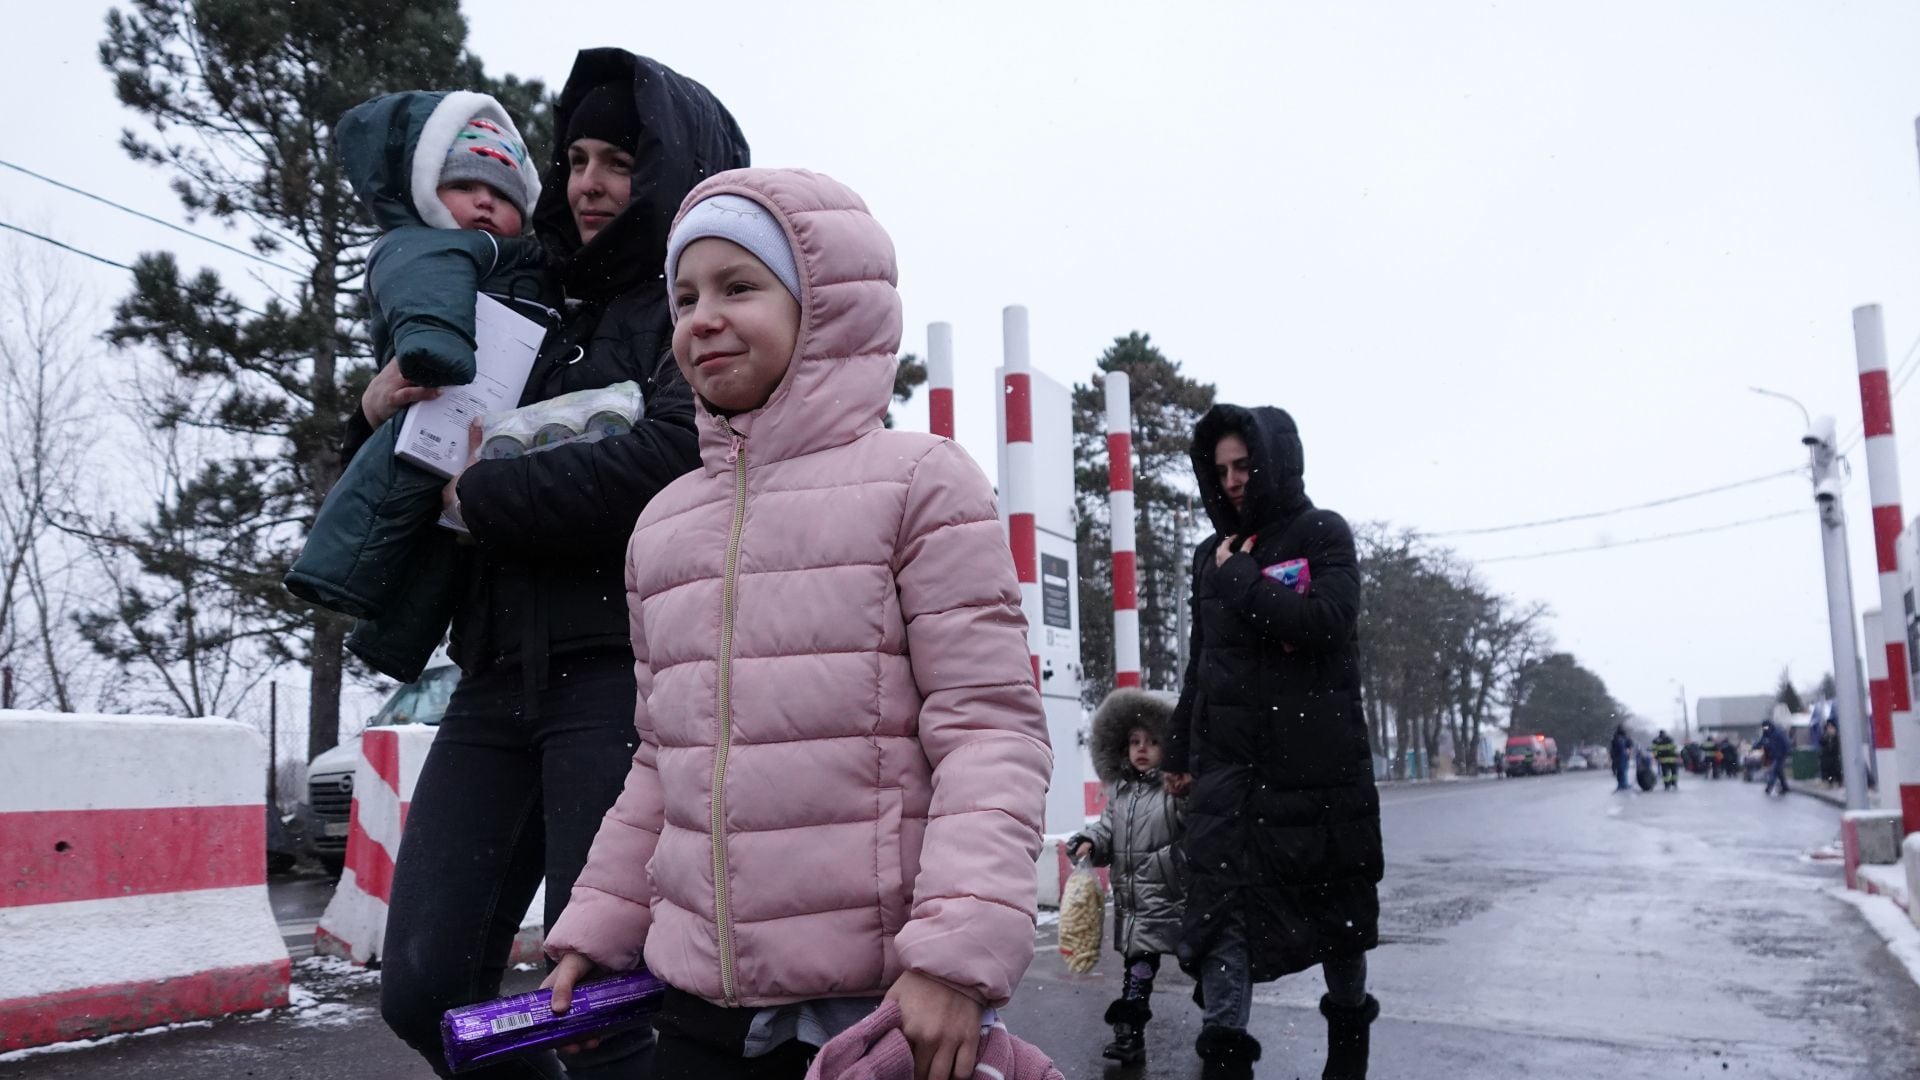 Miles de refugiados de Ucrania migraron hacia ciudades fronterizas buscando refugio tras la guerra contra Rusia (Cuartoscuro).